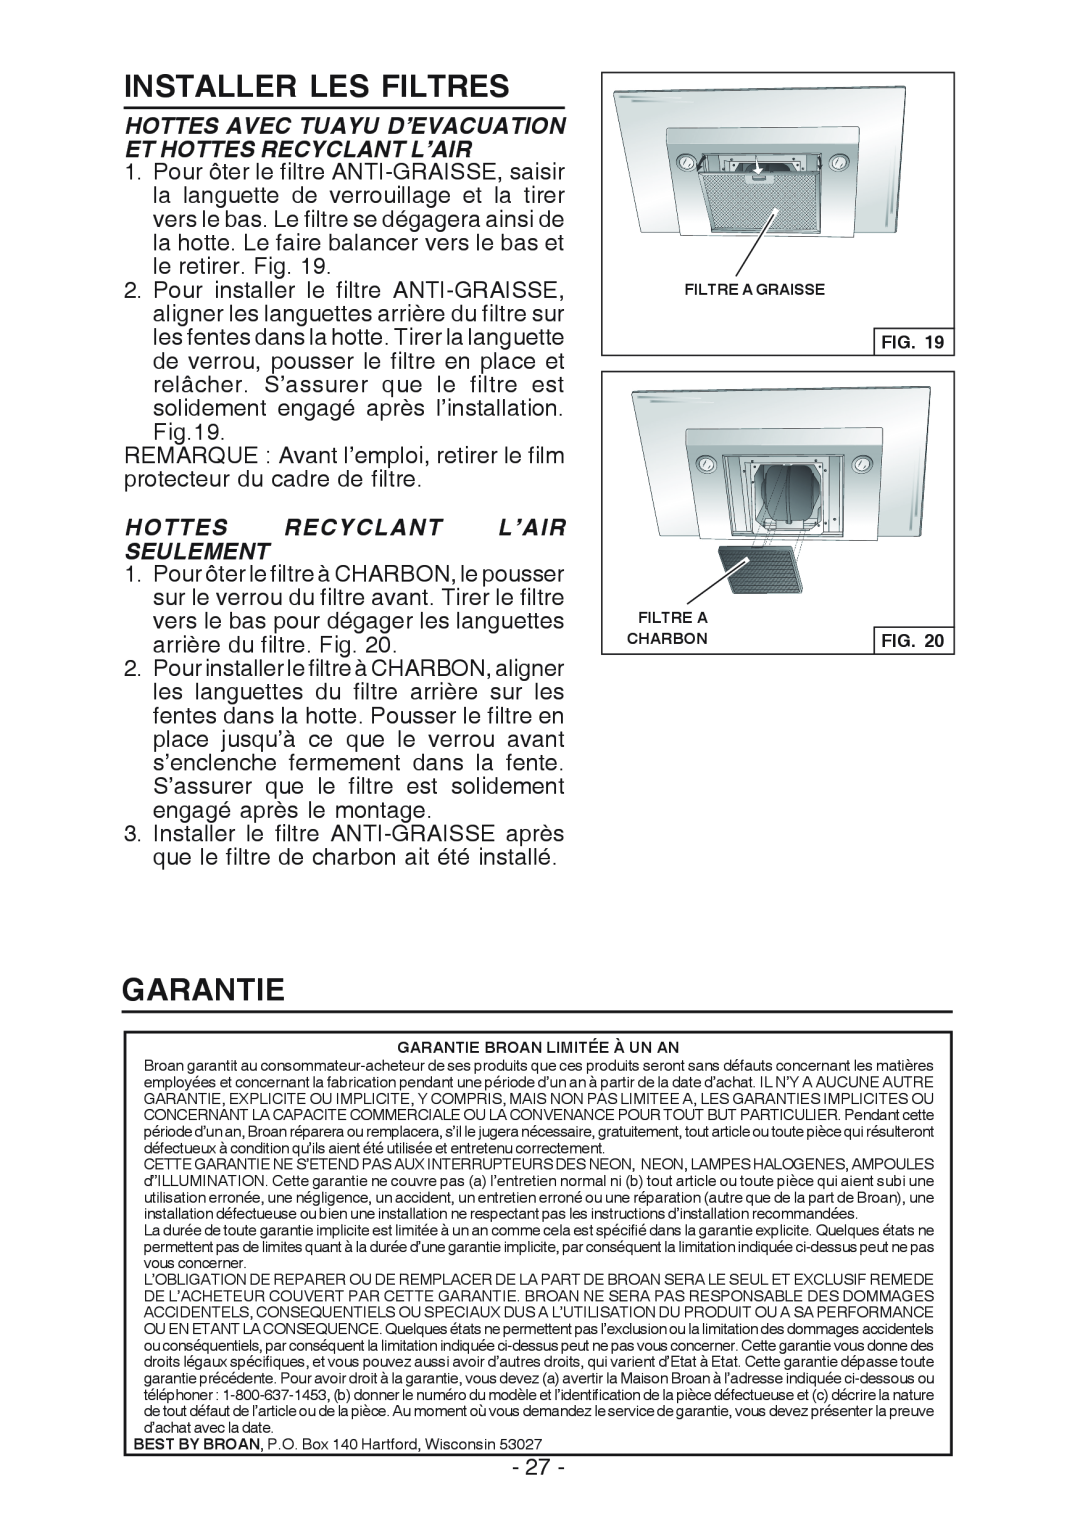 Broan WC26I manual Installer Les Filtres, Garantie, Hottes Avec Tuayu D’Evacuation Et Hottes Recyclant L’Air 